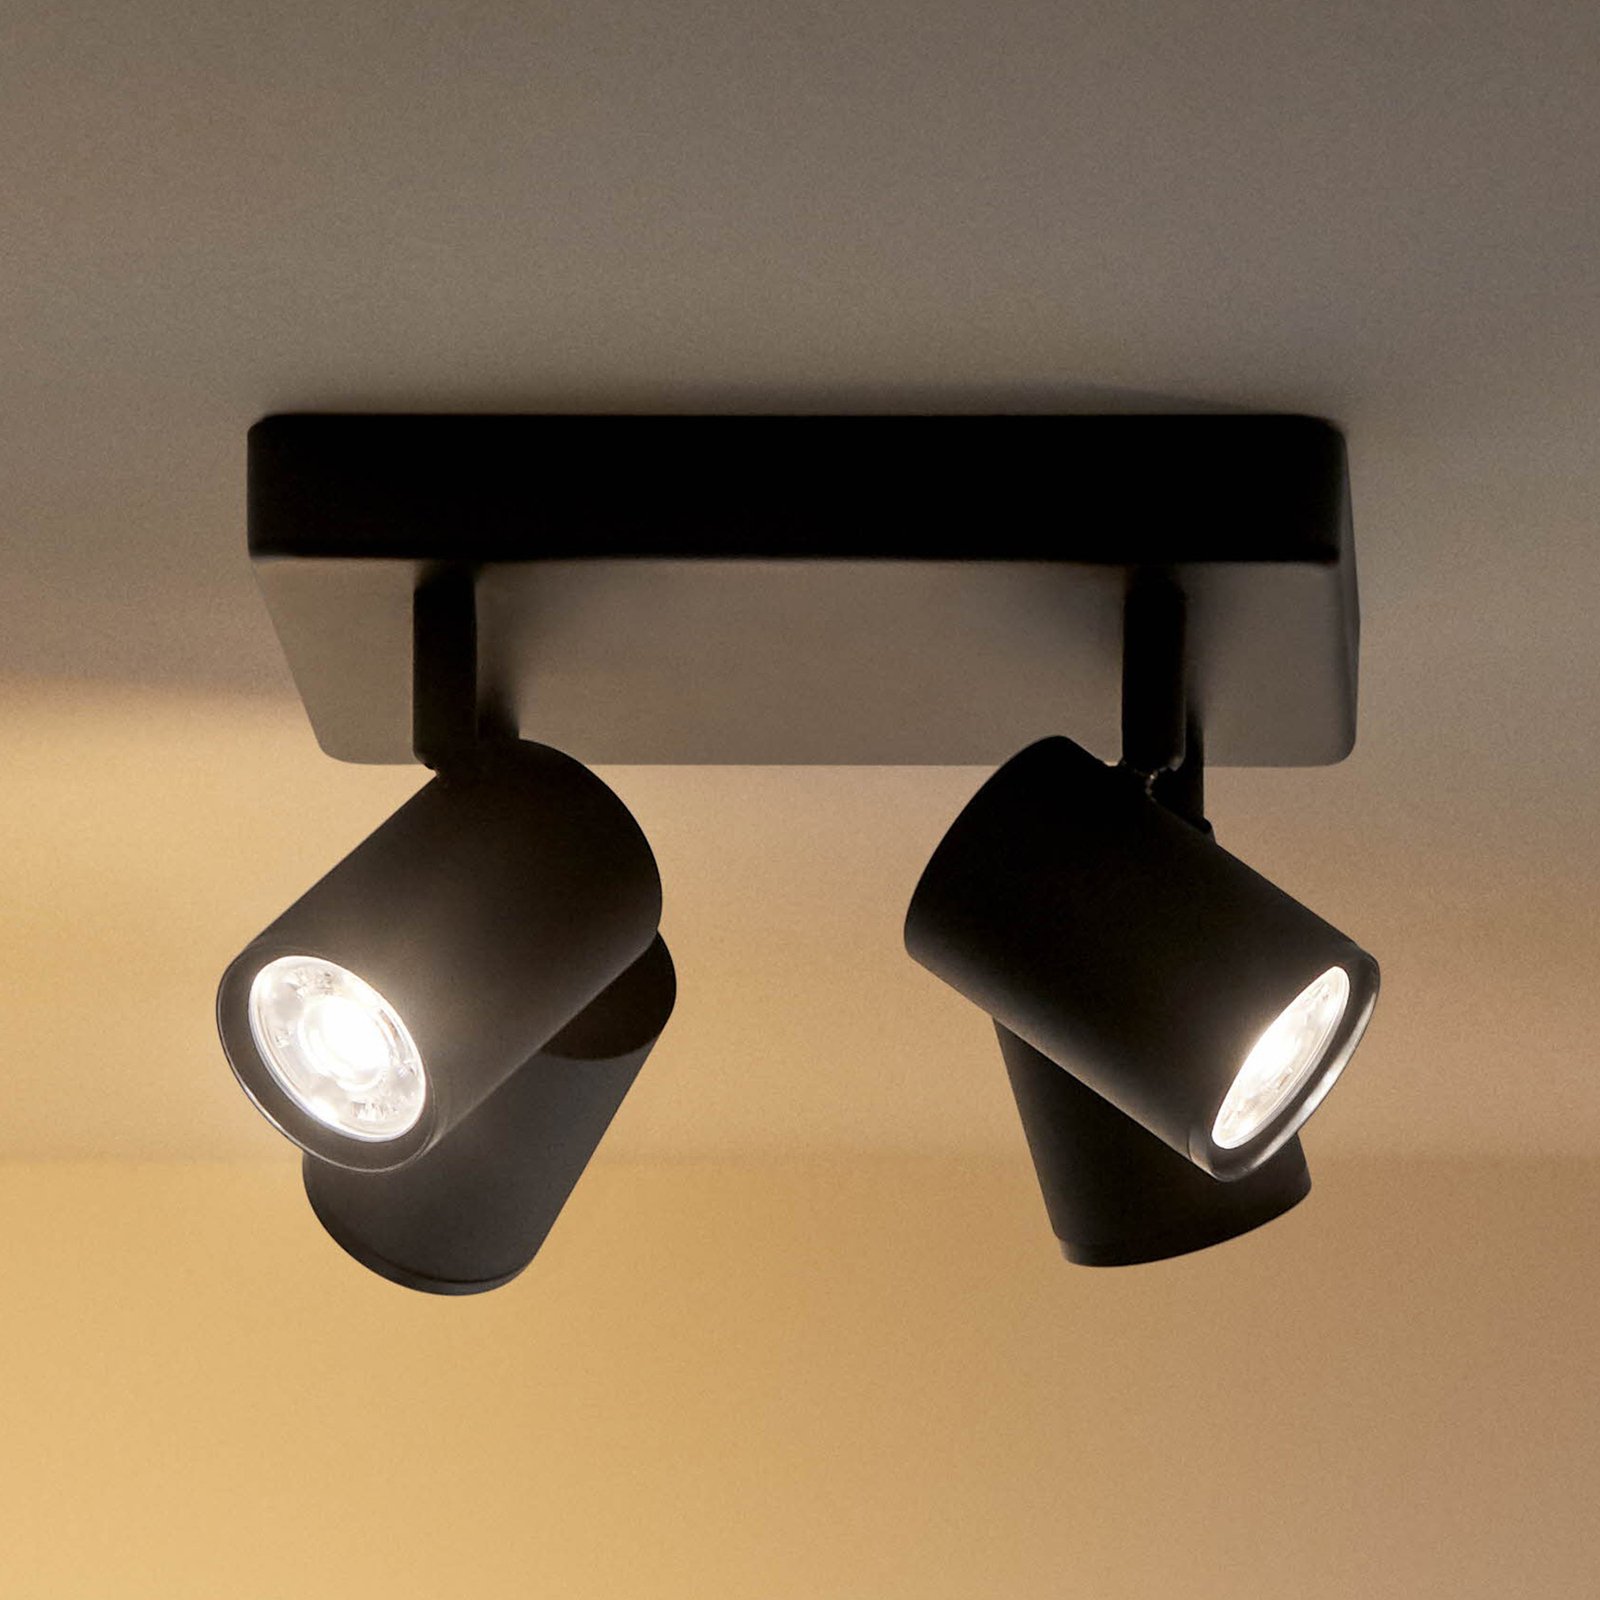 WiZ spot LED soffitto Imageo, 4 luci nero